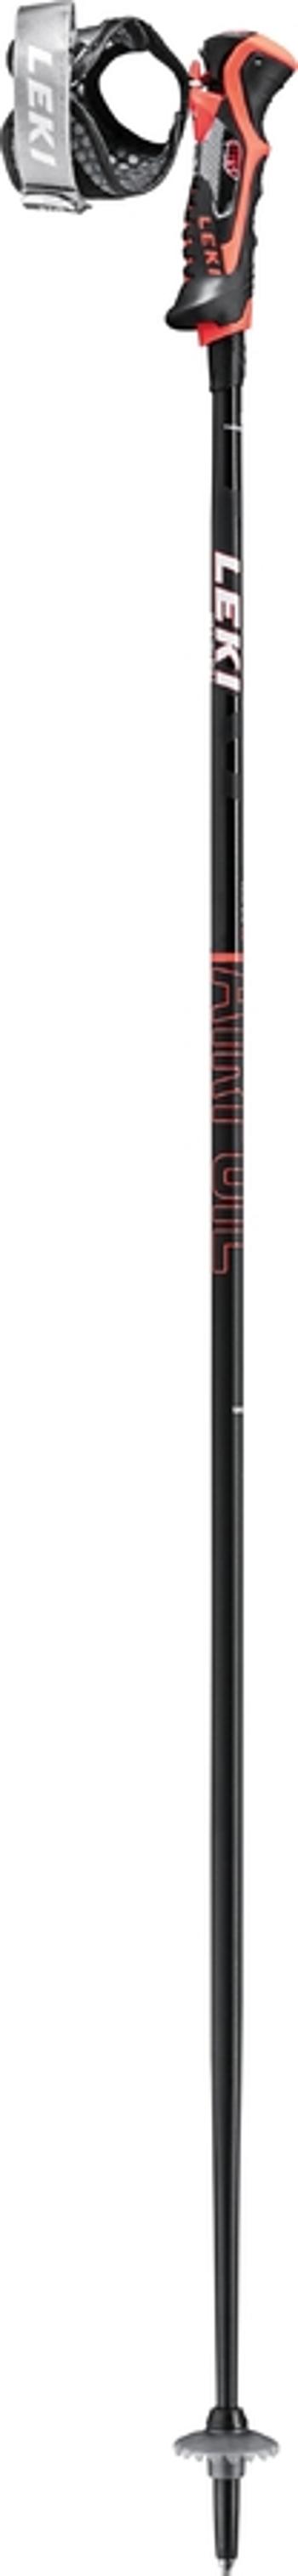 Stâlpi de coborâre Leki Profil aerodinamic 3D negru-fluorescent rosu alb 65067951